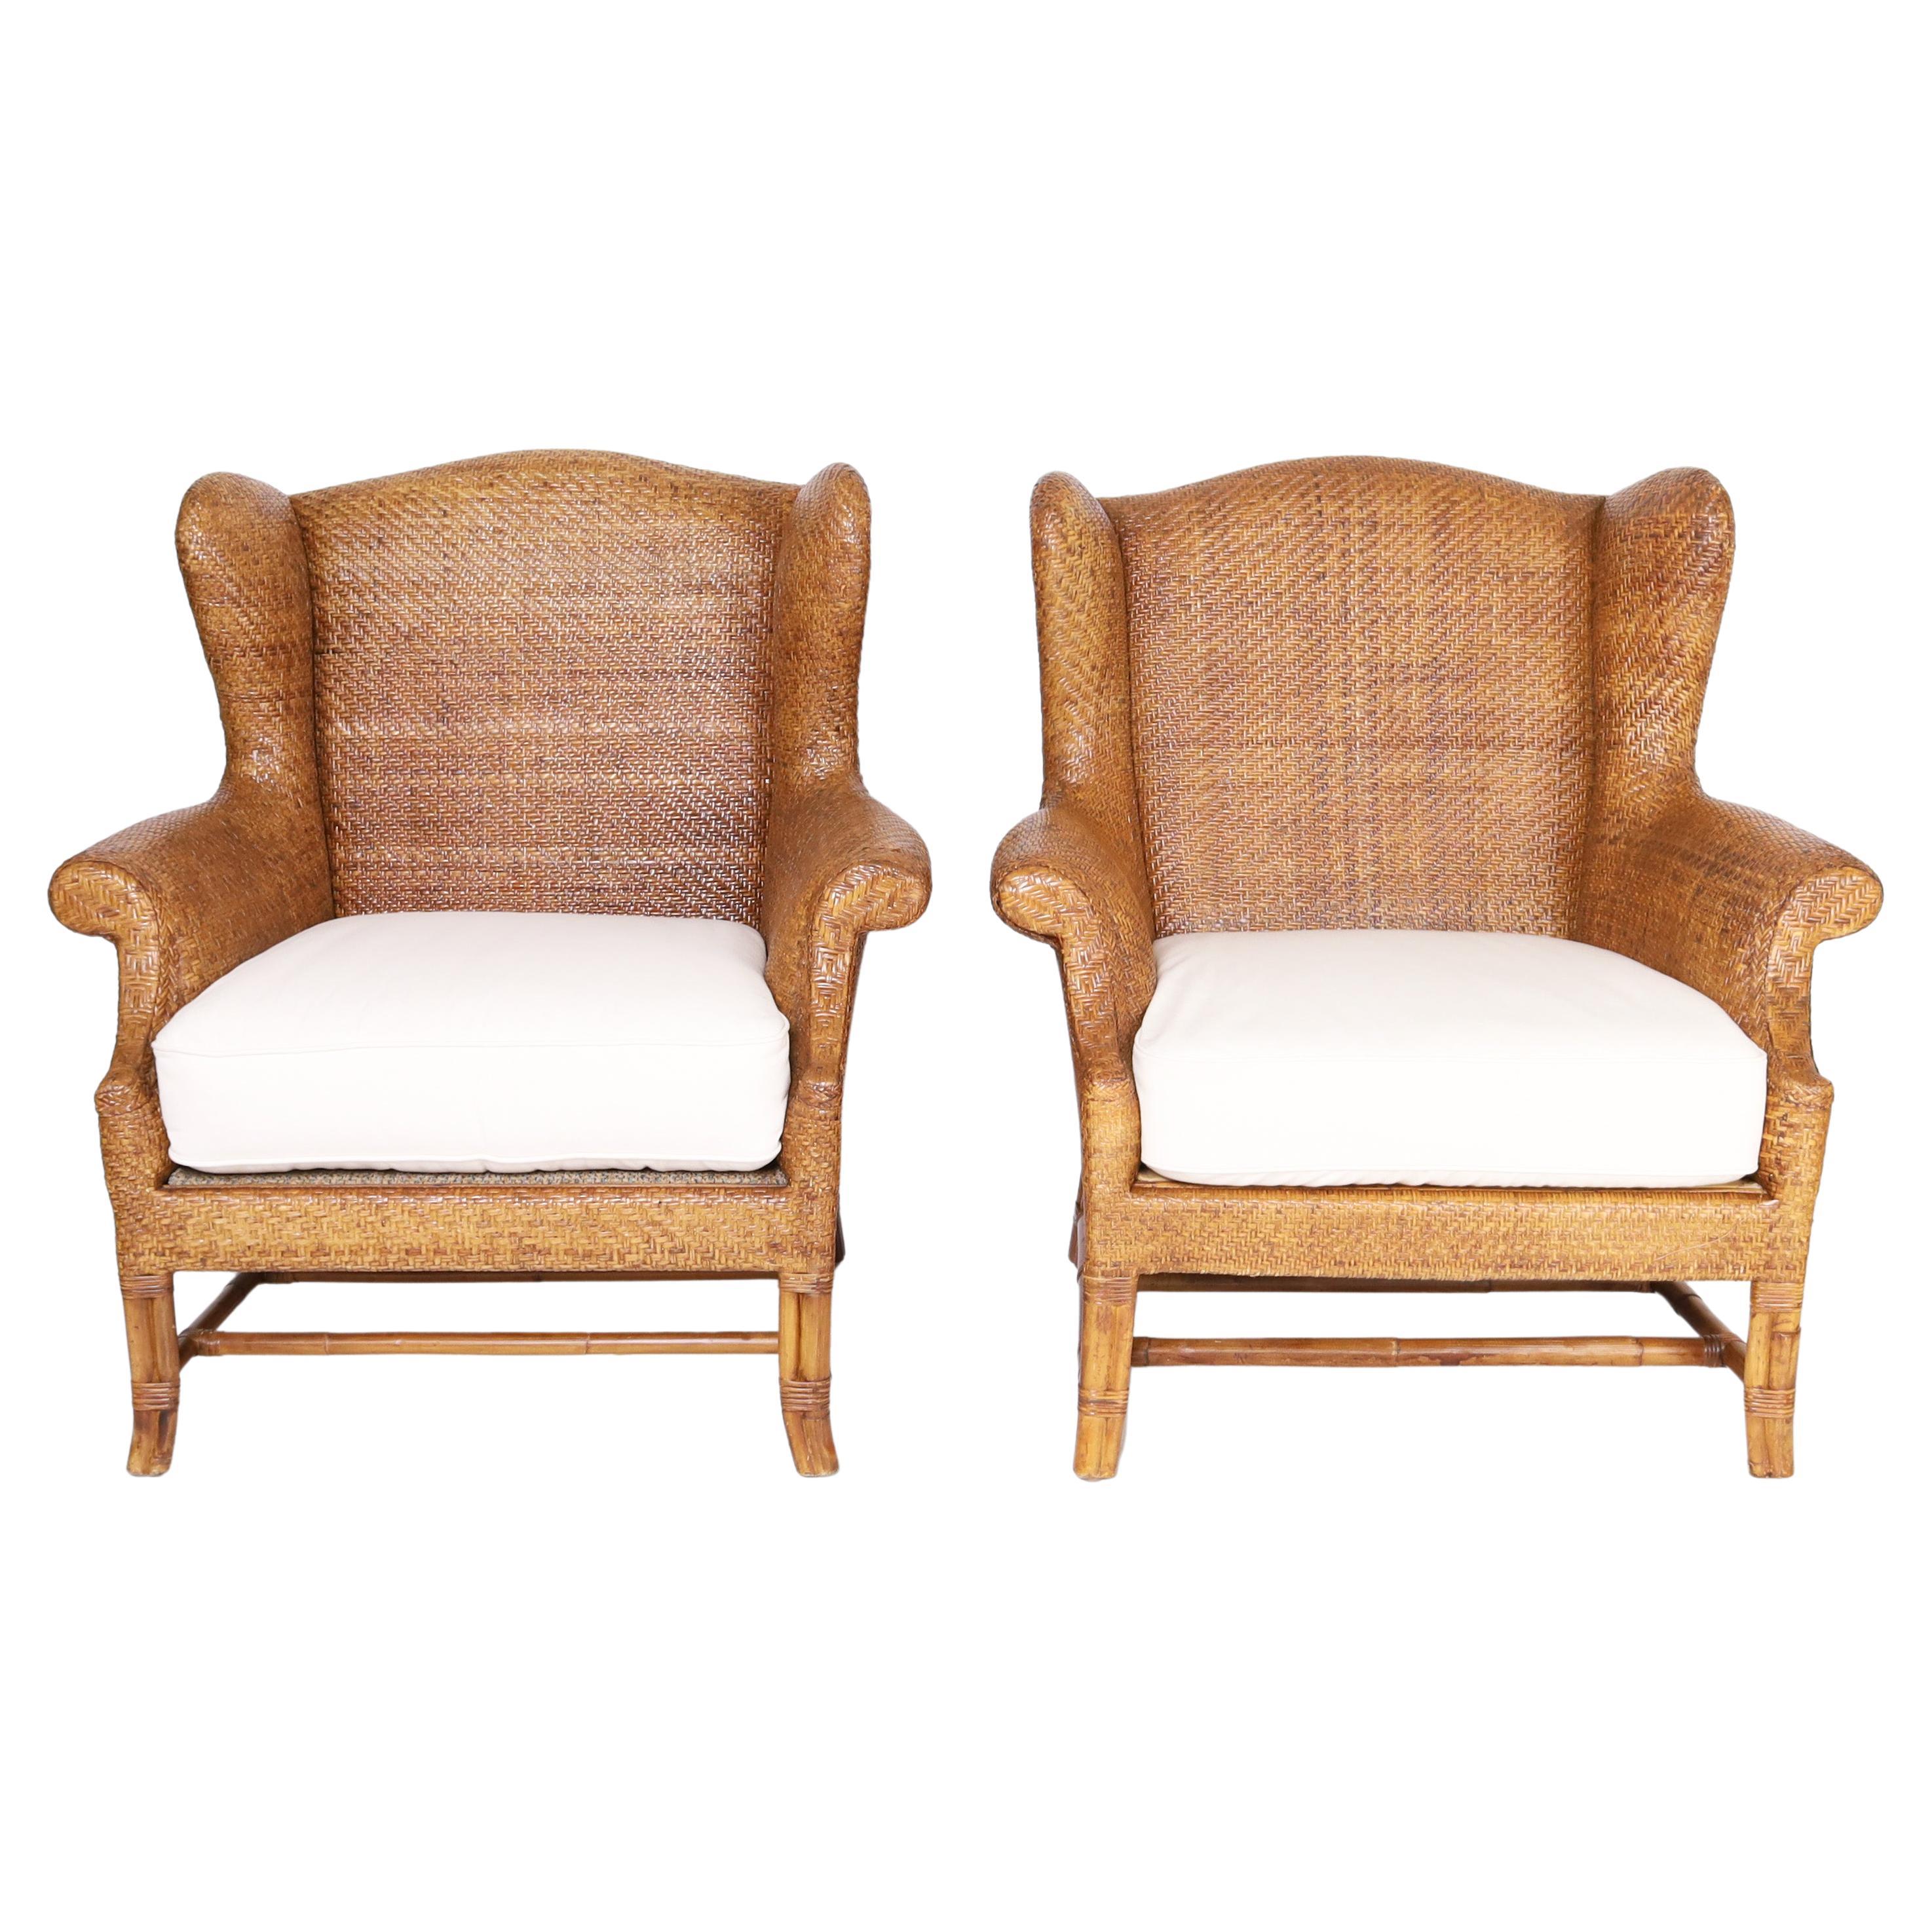 Magnifique paire de fauteuils à oreilles de style Coloni, fabriqués avec du roseau tressé, dans un motif à chevrons sur une forme classique avec des pieds et des brancards en bambou. Signé Milling Road pour Baker.

